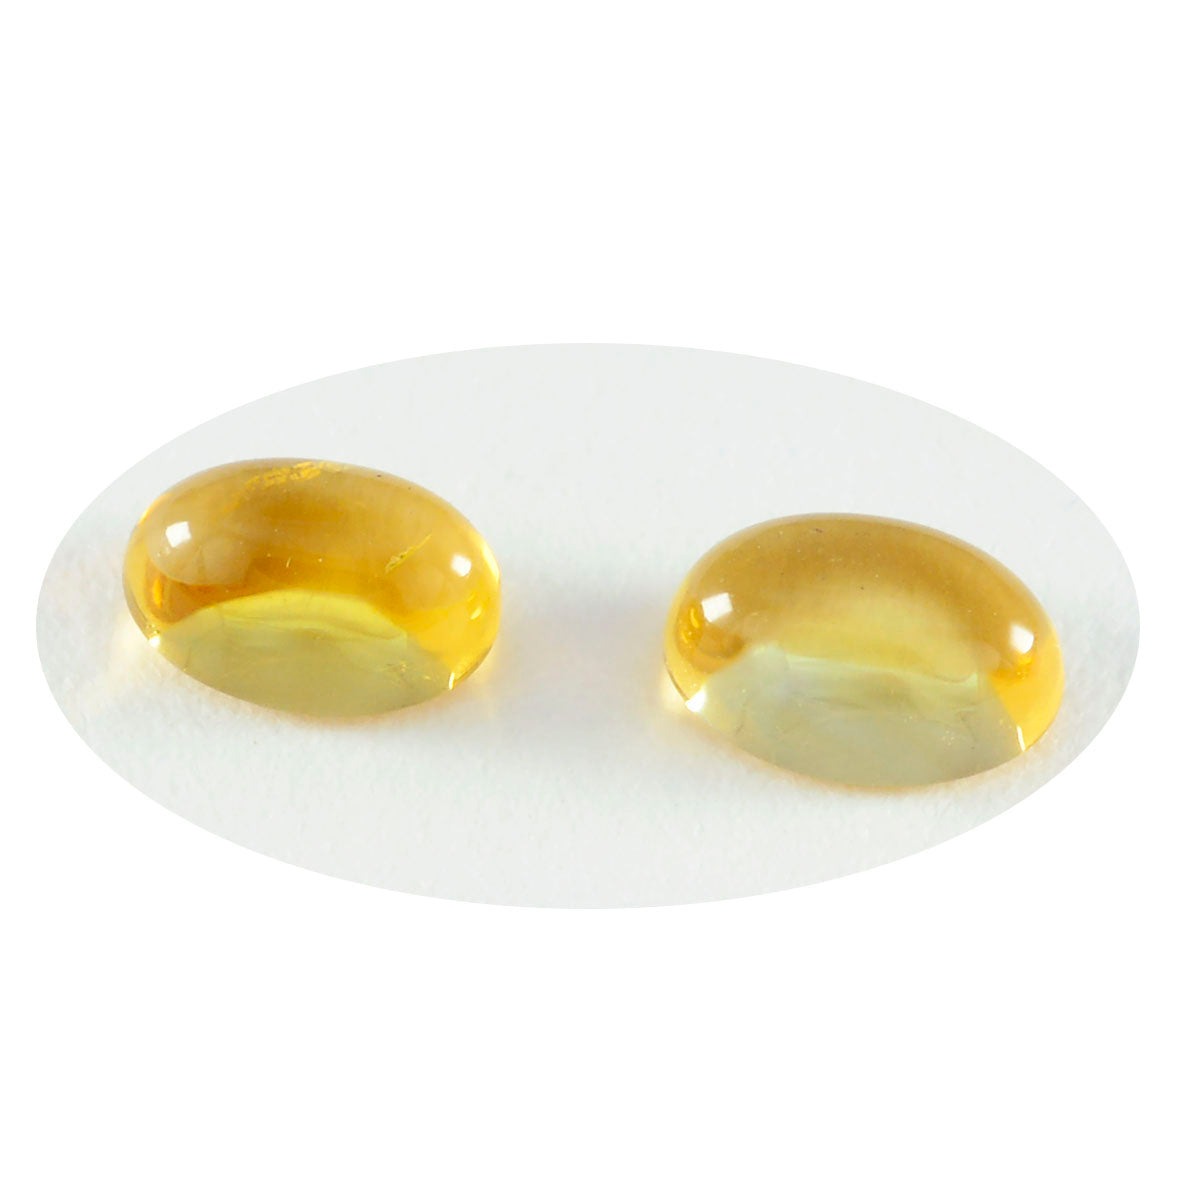 riyogems 1pc cabochon di citrino giallo 9x11 mm di forma ovale, pietra preziosa di eccellente qualità